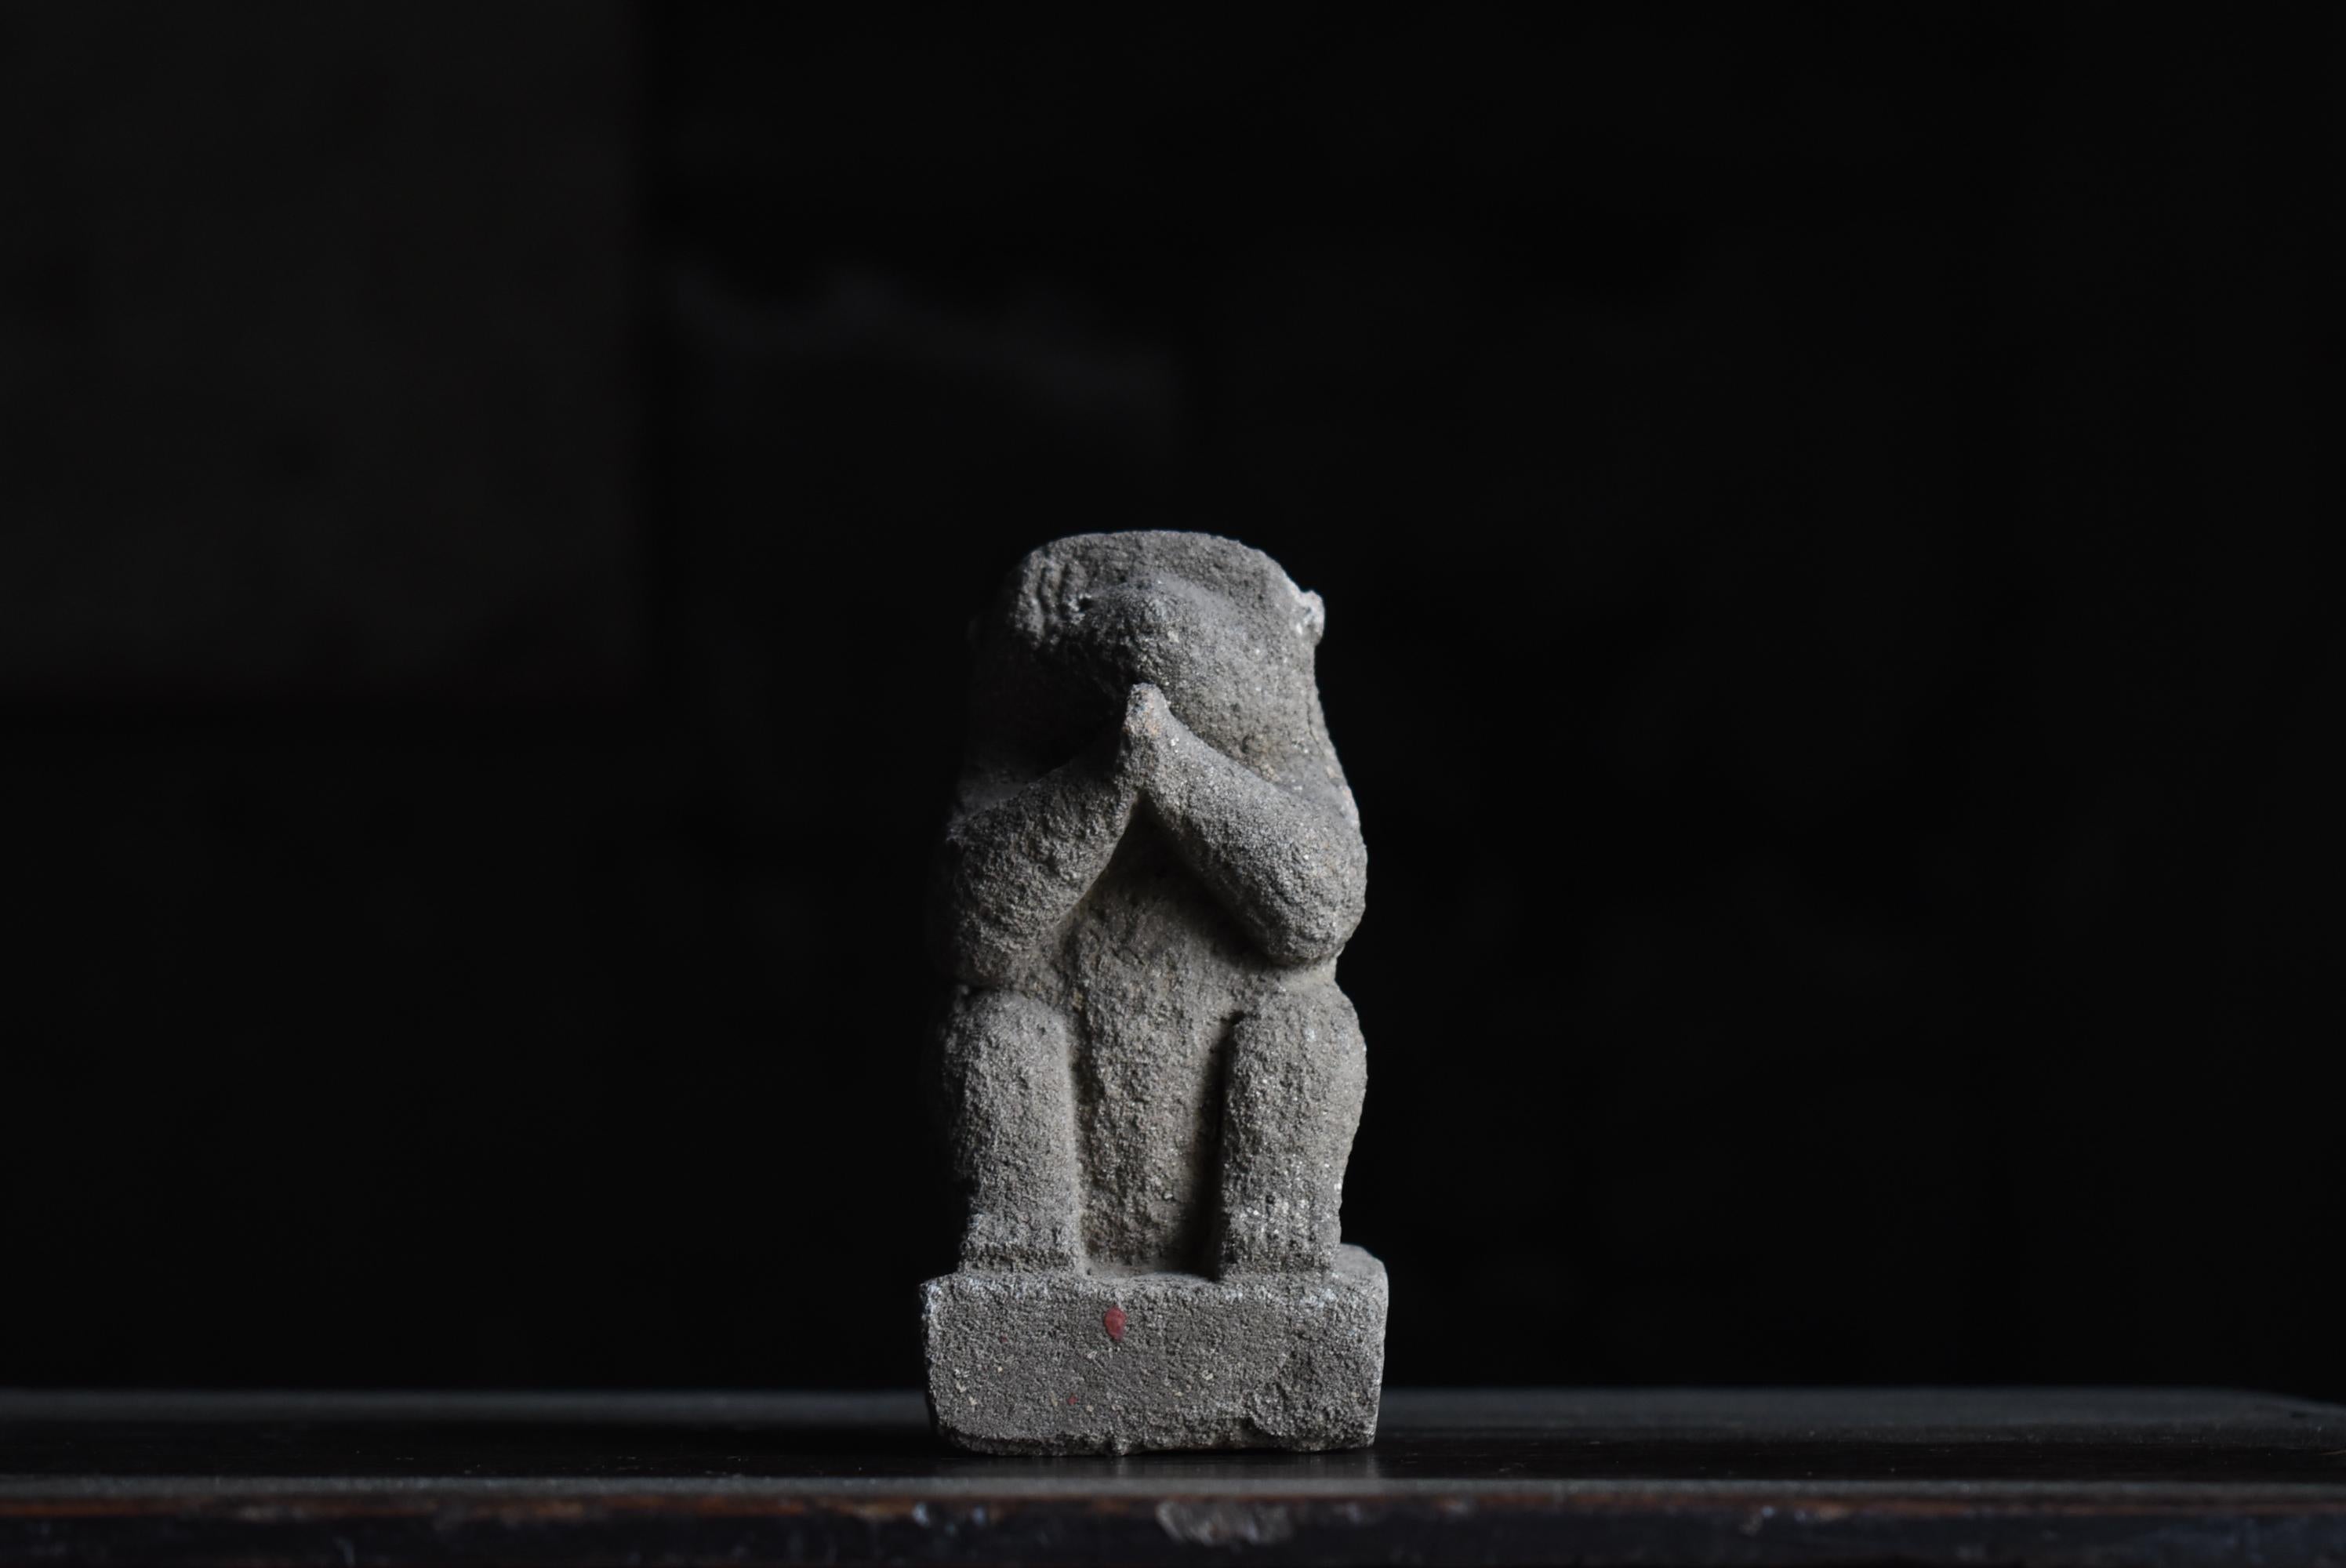 Japanese Antique Stone Craving Monkey 1800s-1860s / Buddhist Art Object Wabisabi 8